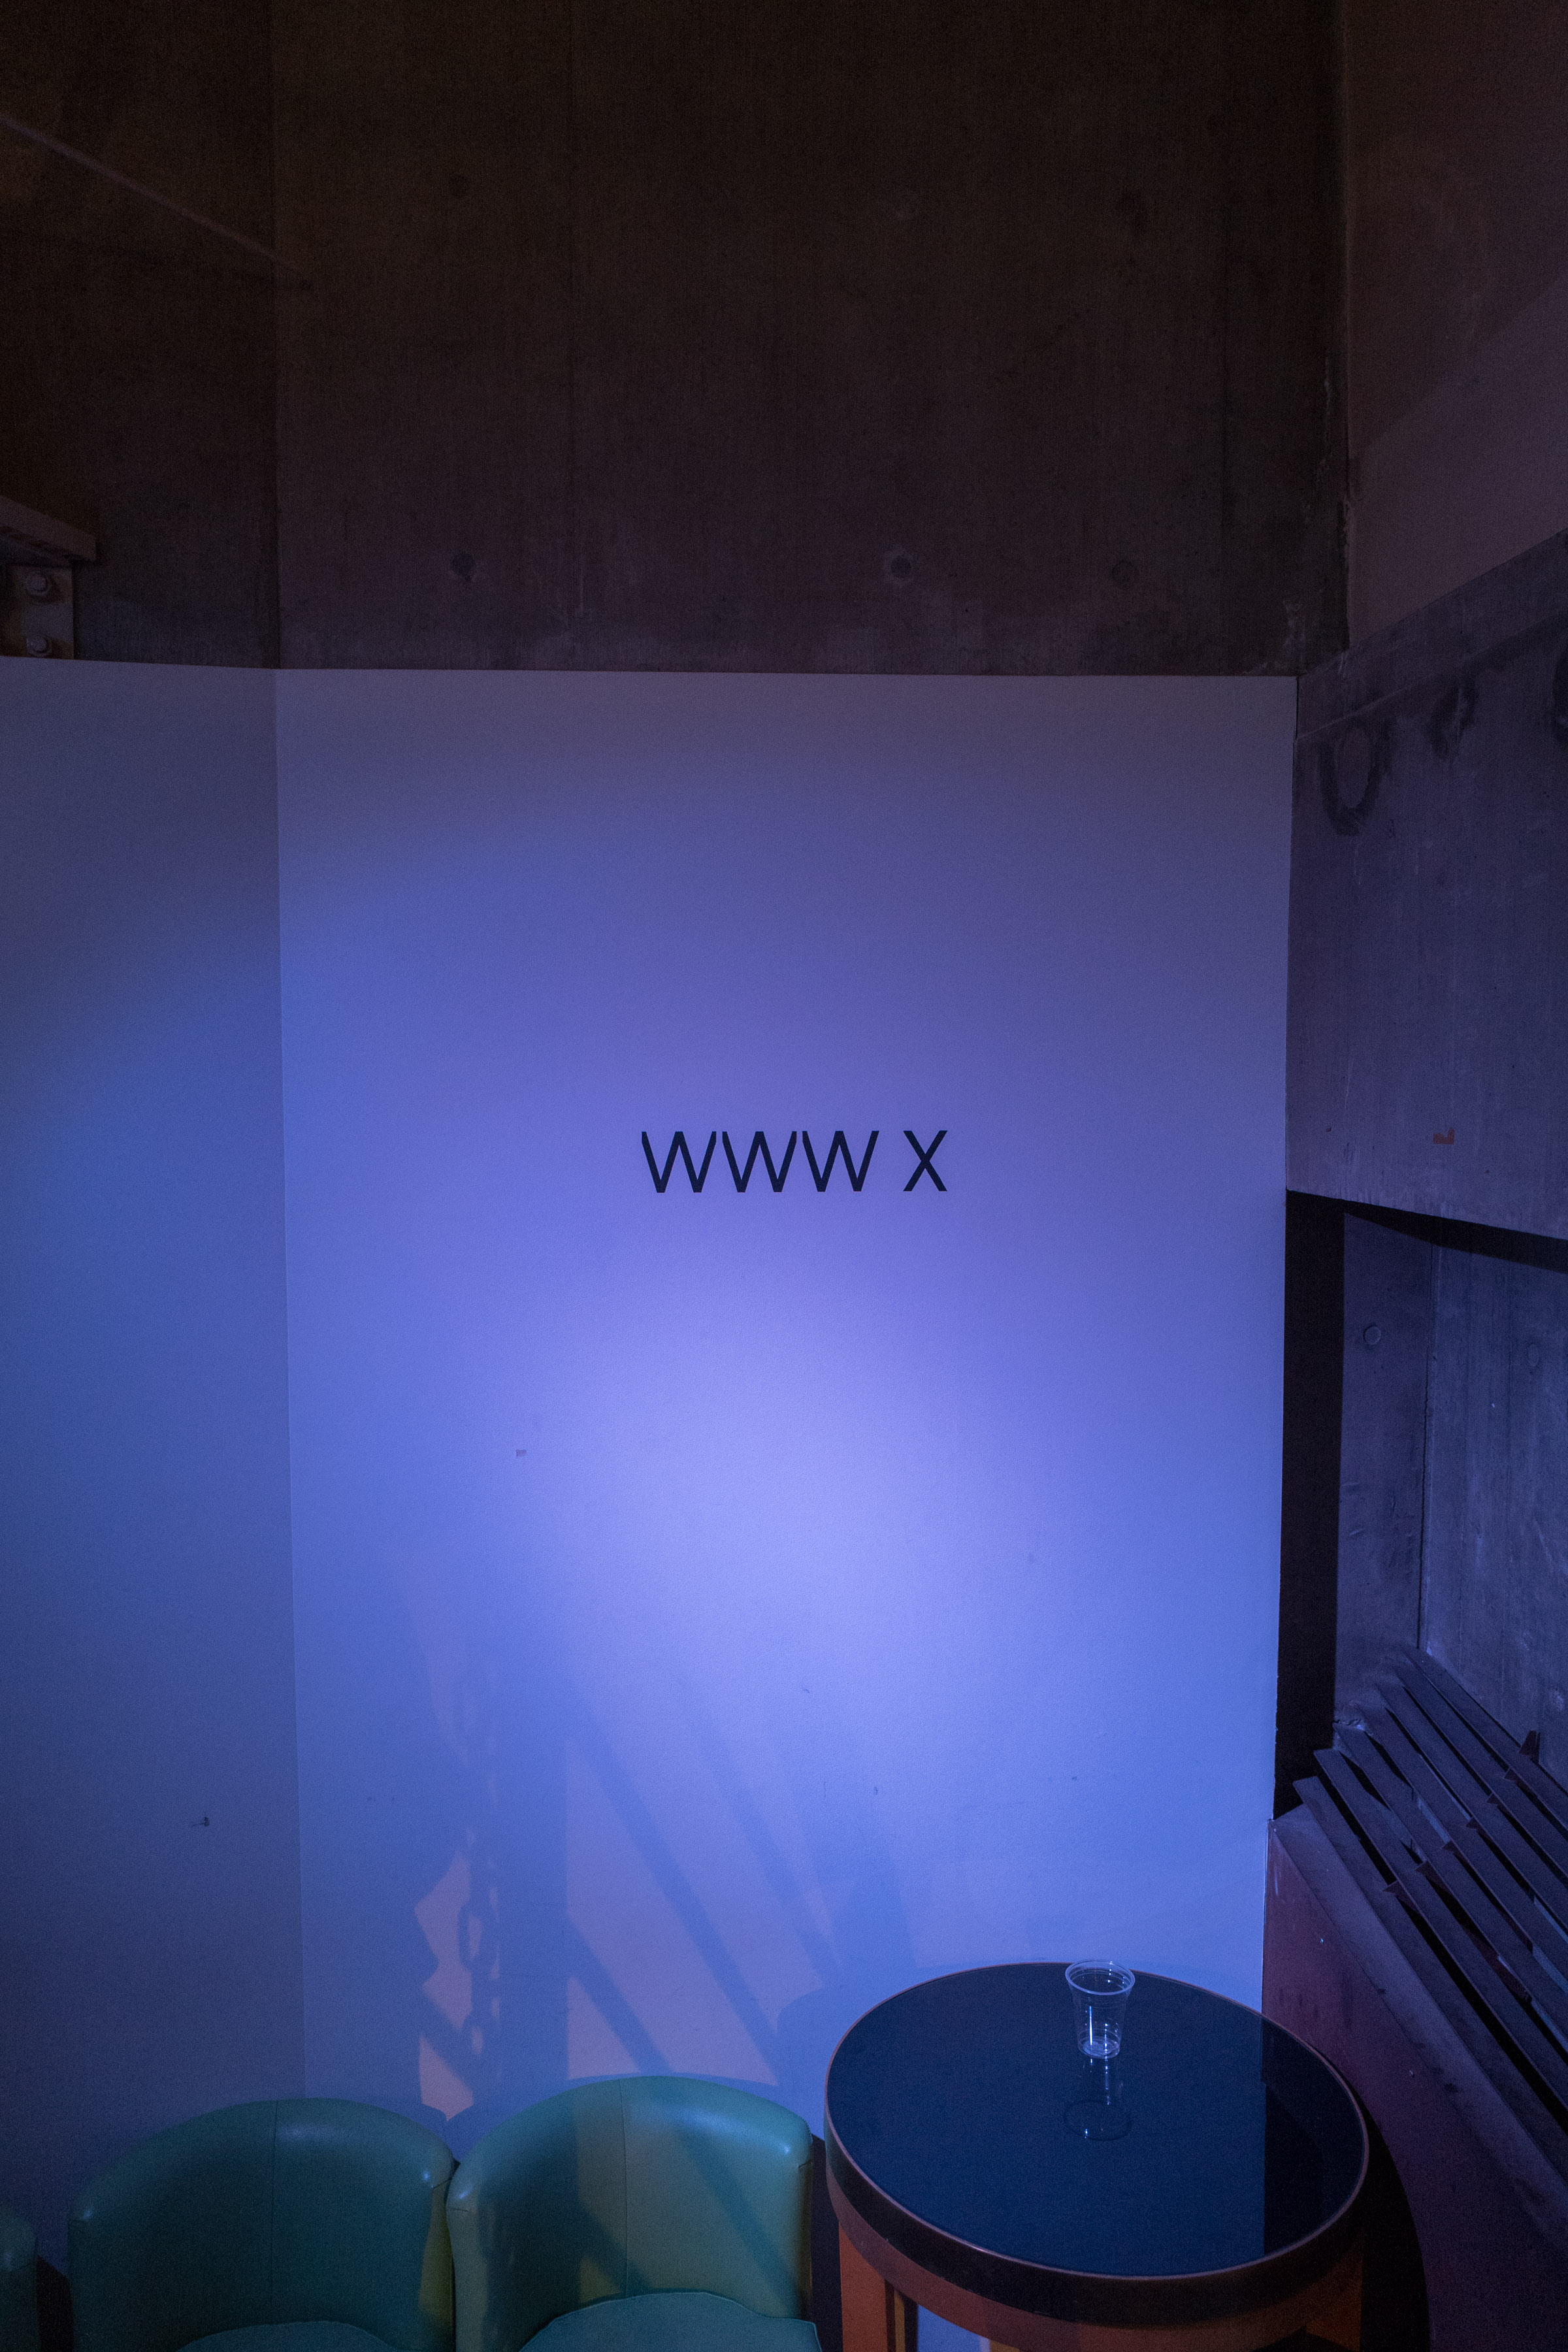 WWW X signage